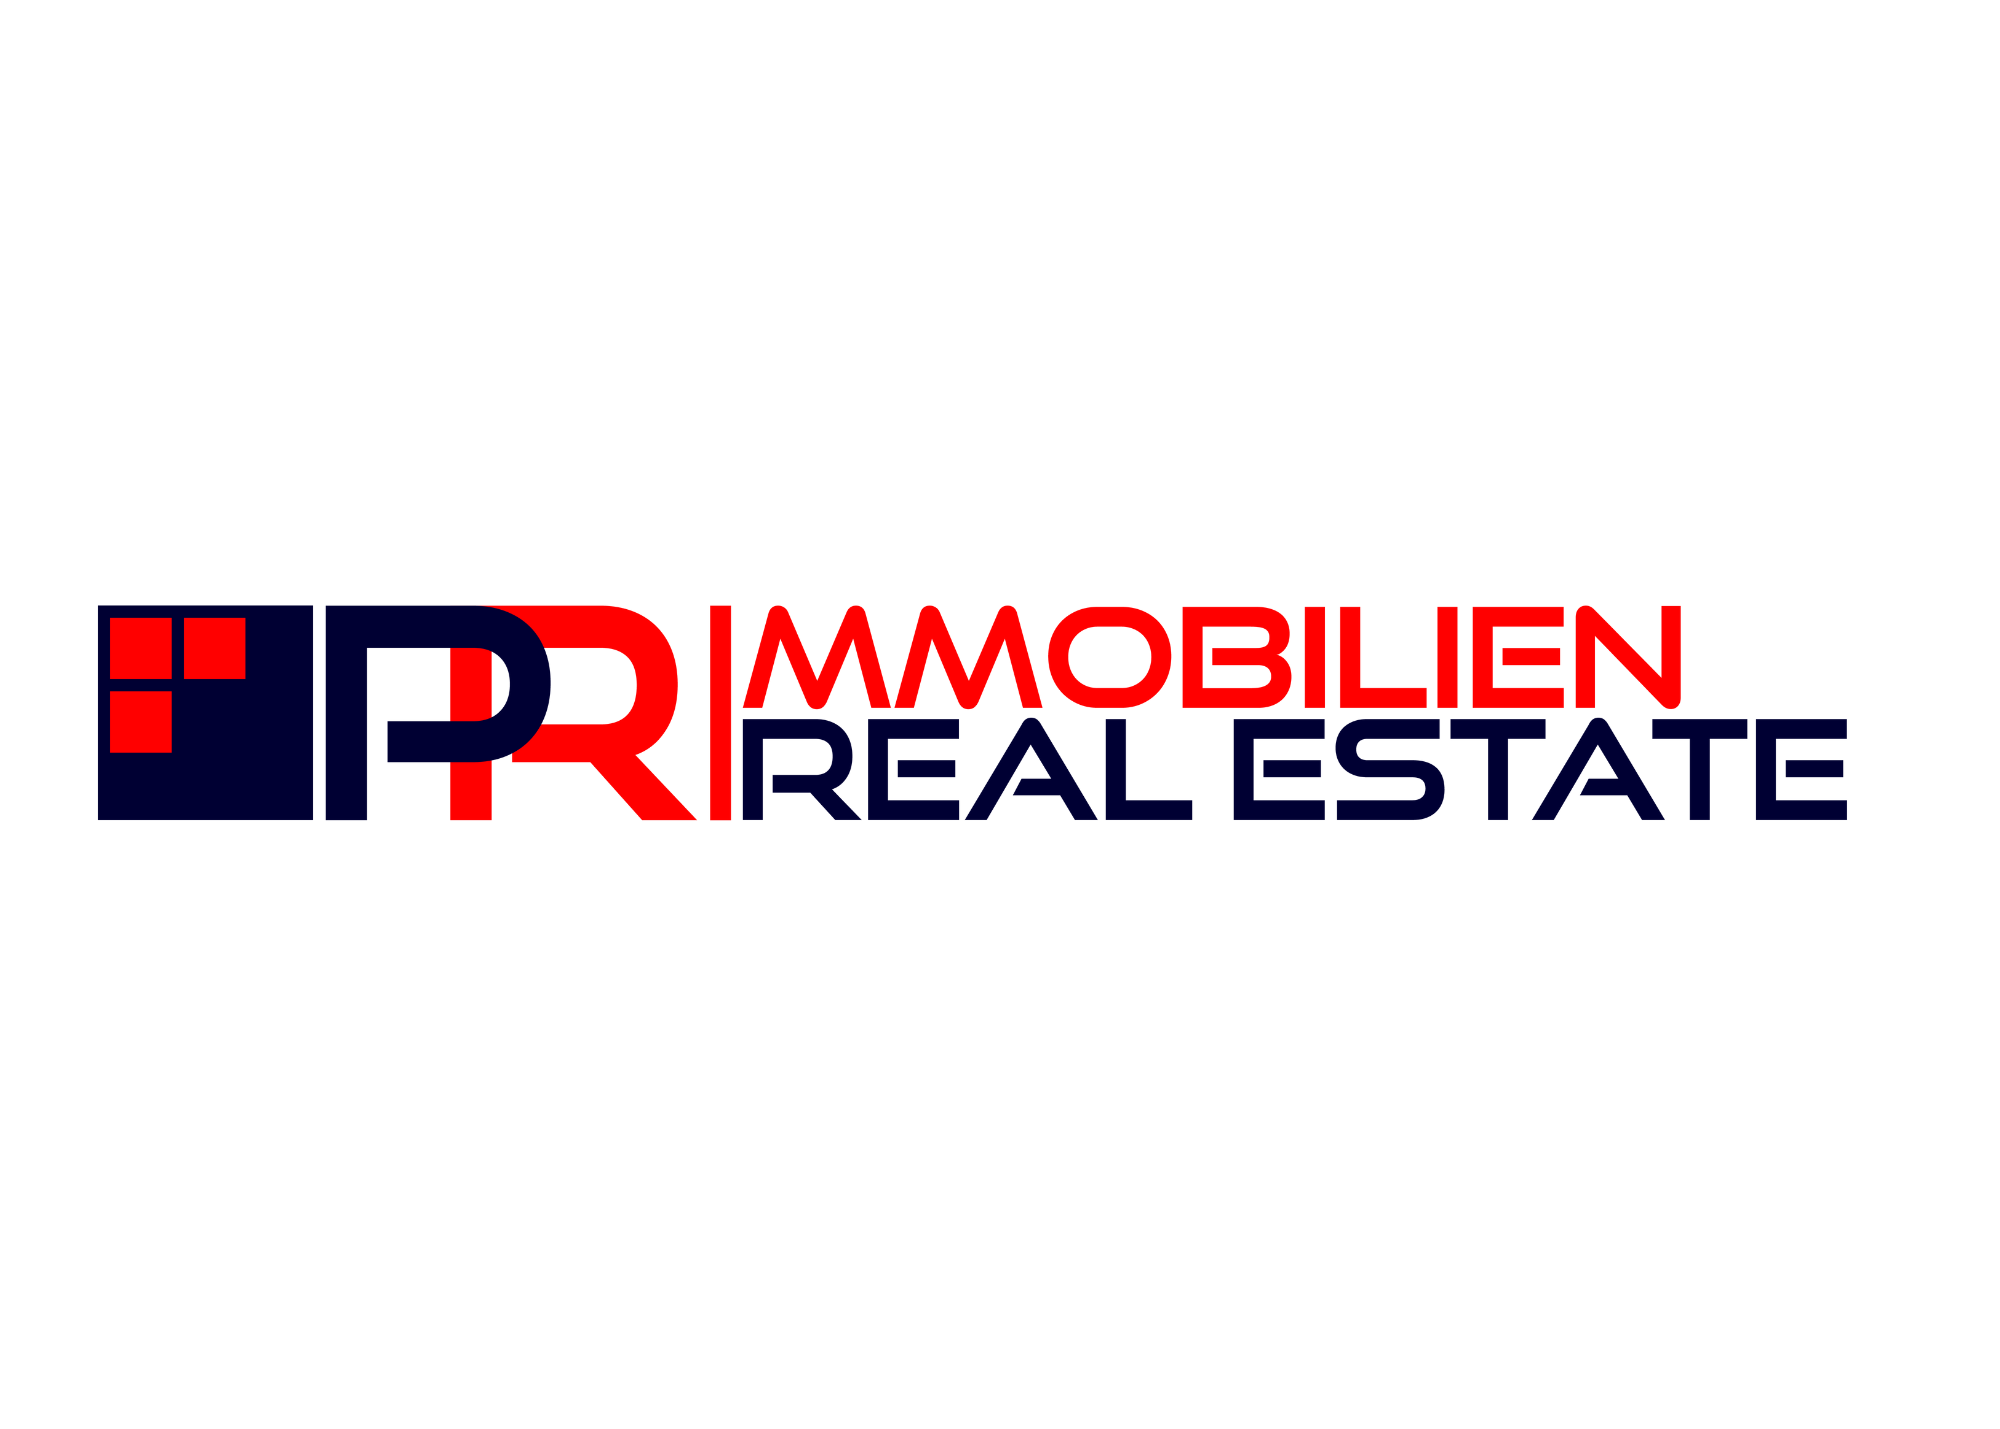 PR Immobilien Real Estate